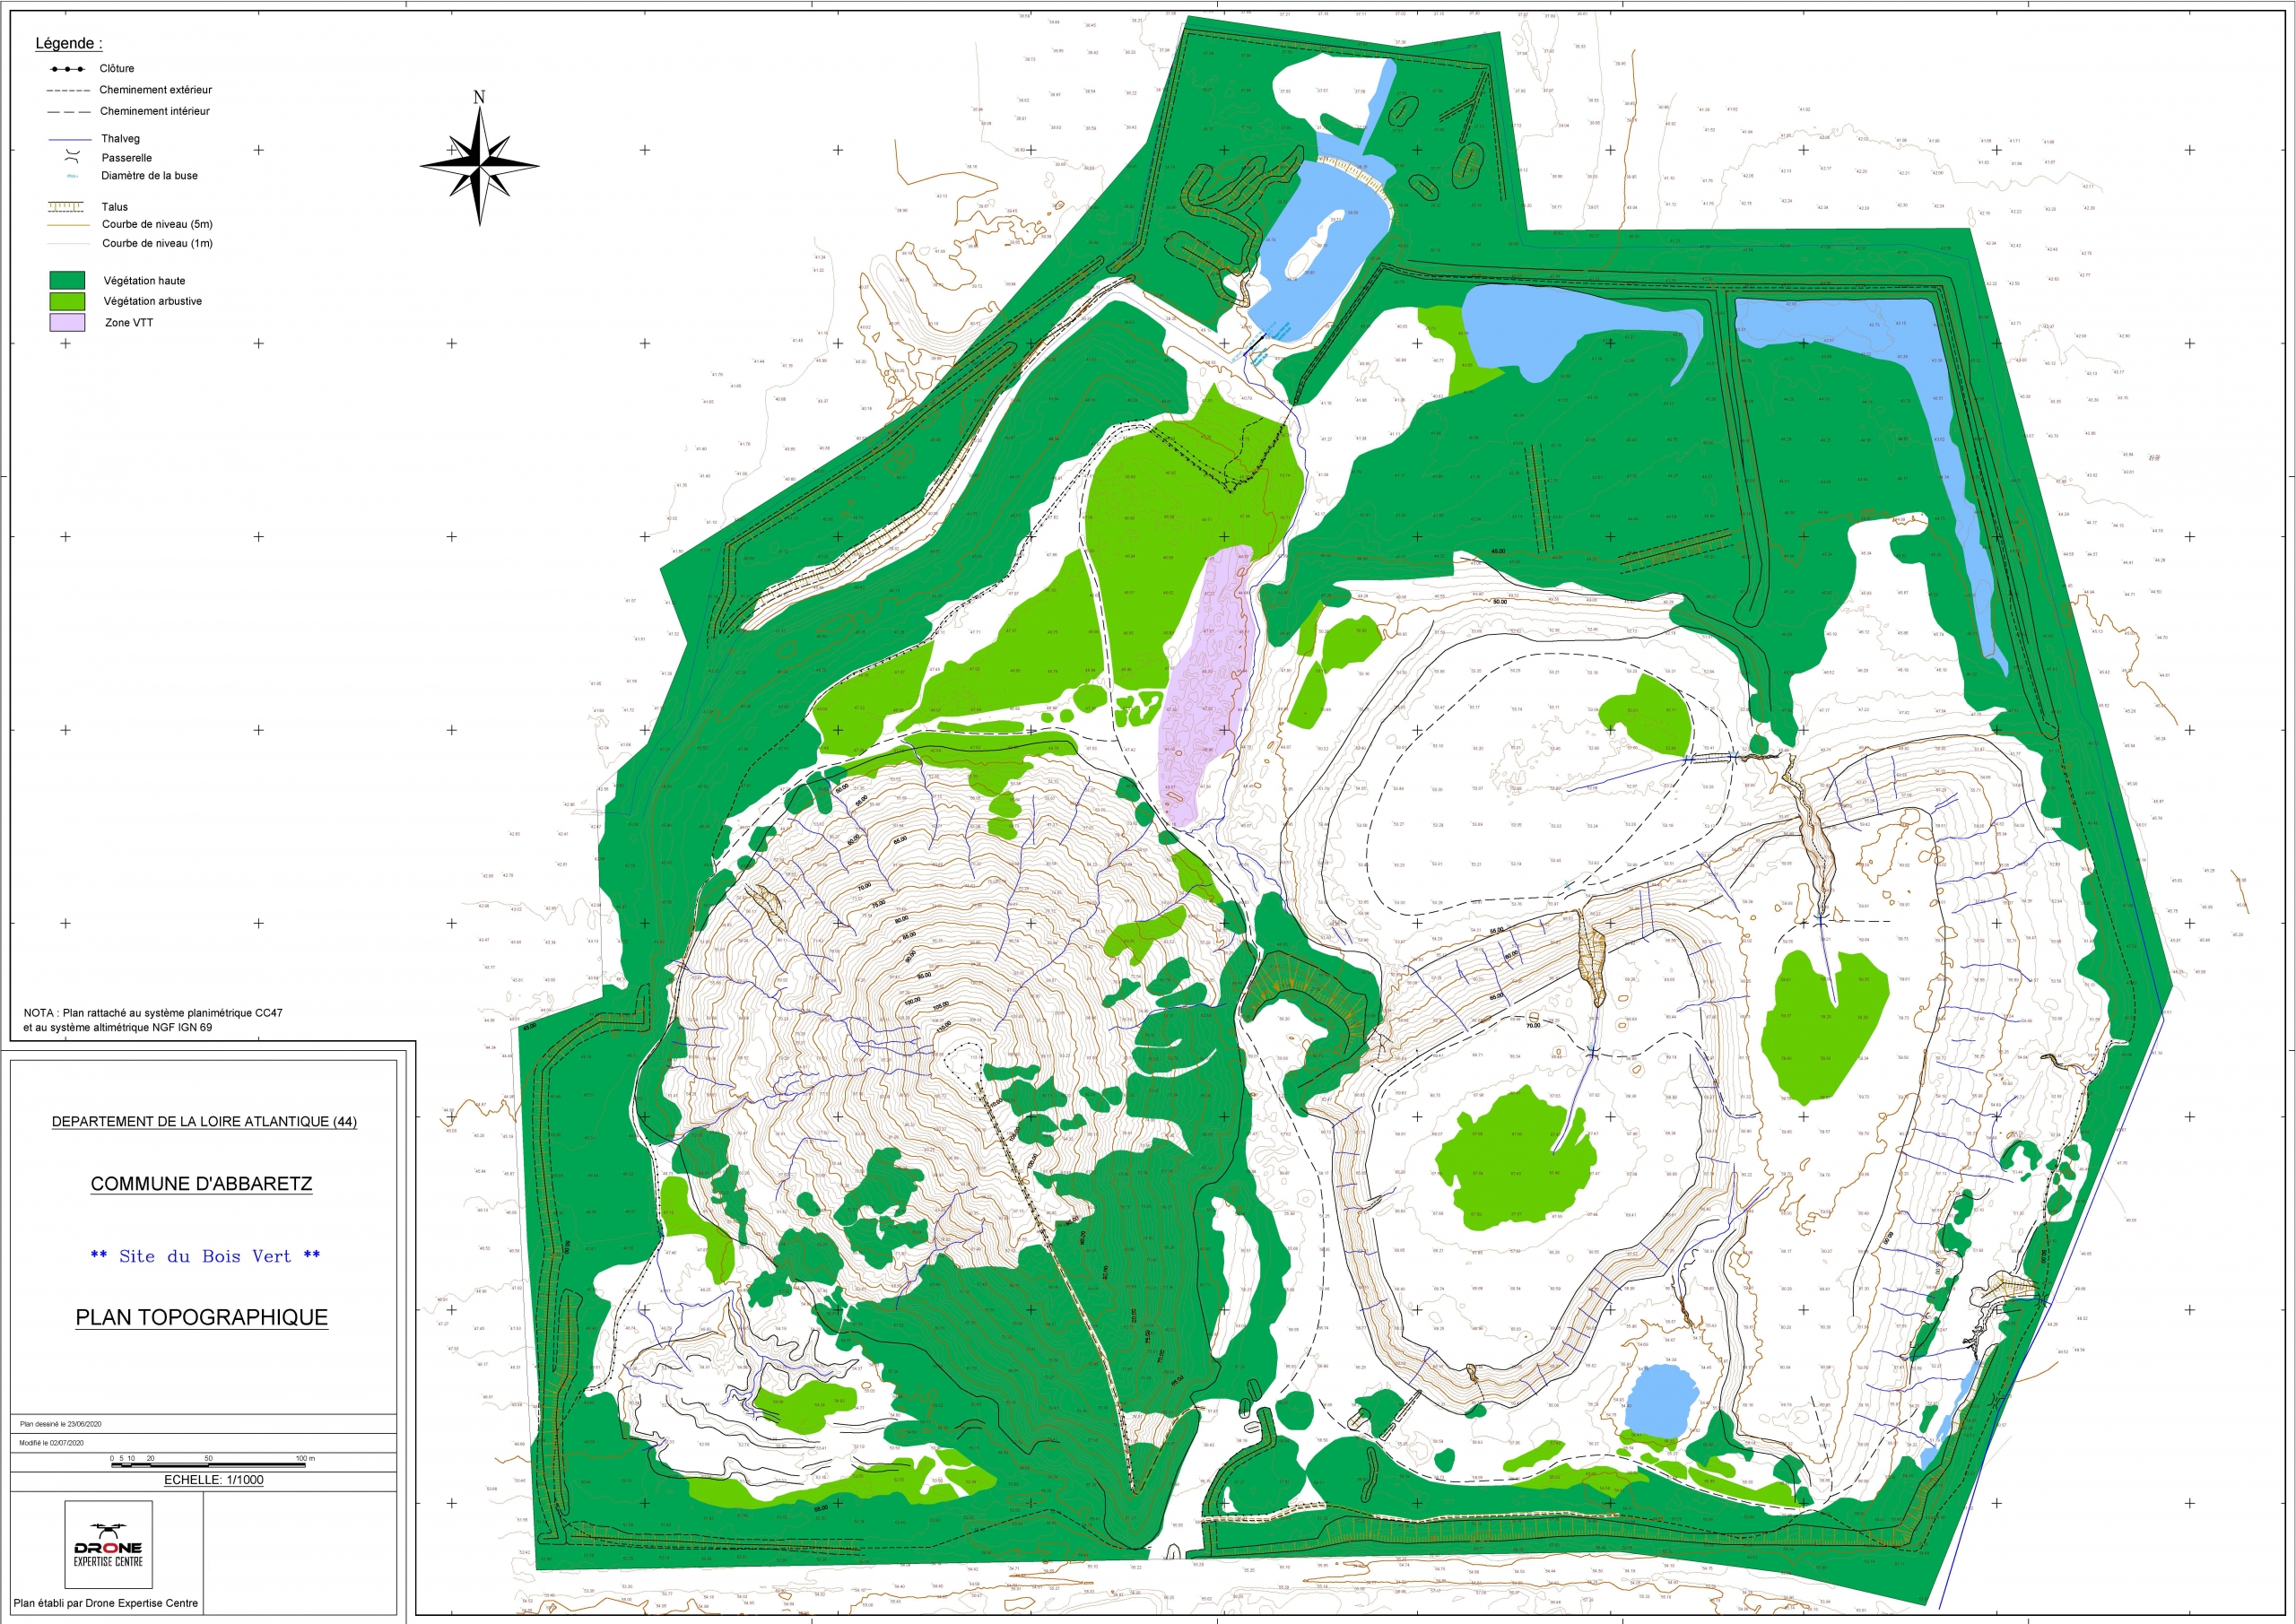 Plan topographique réalisé à partir d'une captation drone et d'un traitement de données par photogrammétrie sur l'ancien site minier d'Abbaretz